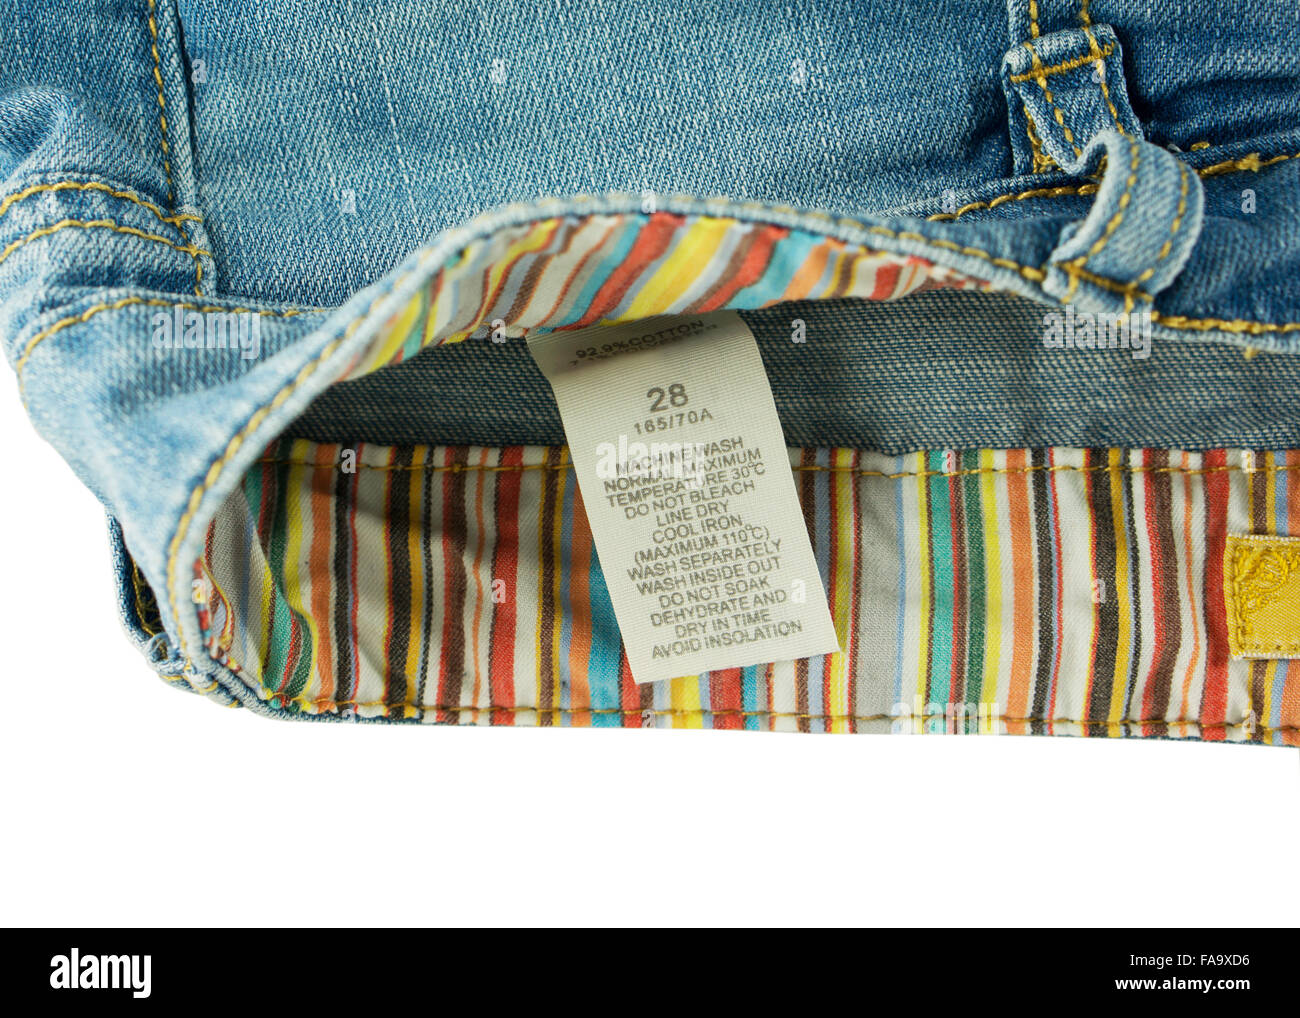 Marque de vêtements avec gros plan sur lavage jeans Photo Stock - Alamy